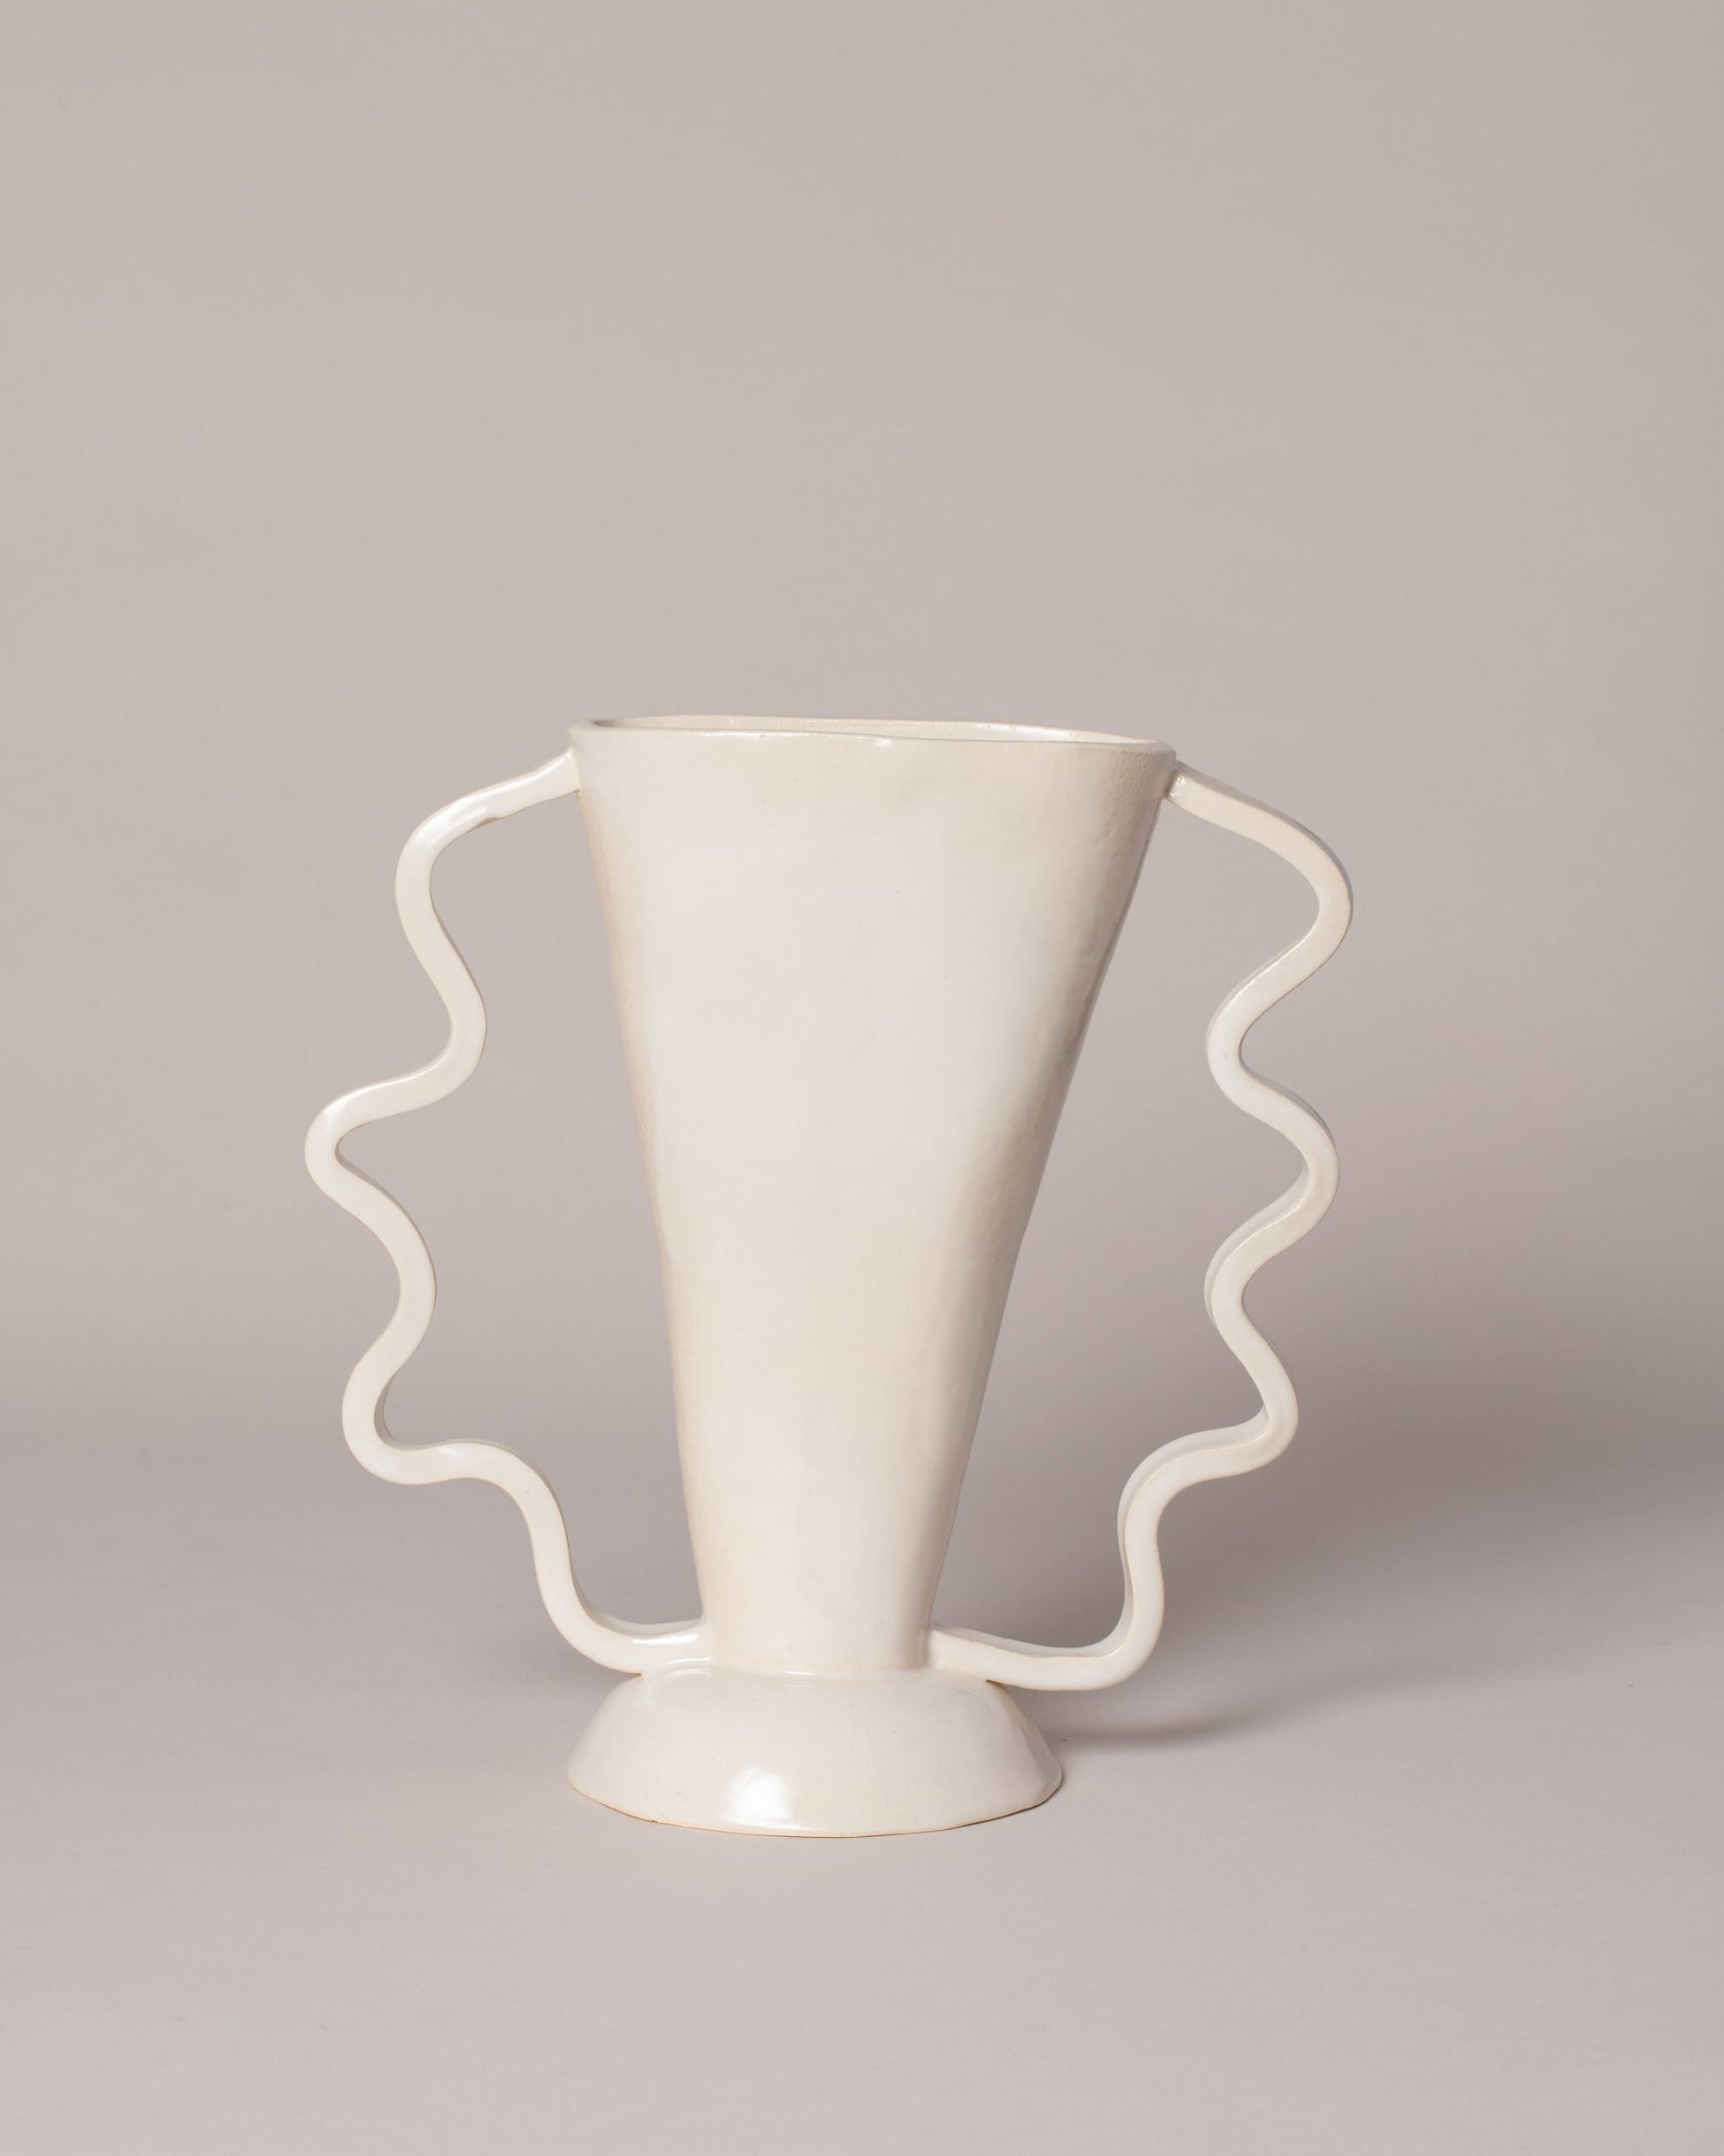 Morgan Peck Dandelion White Stretch Vase on light color background.